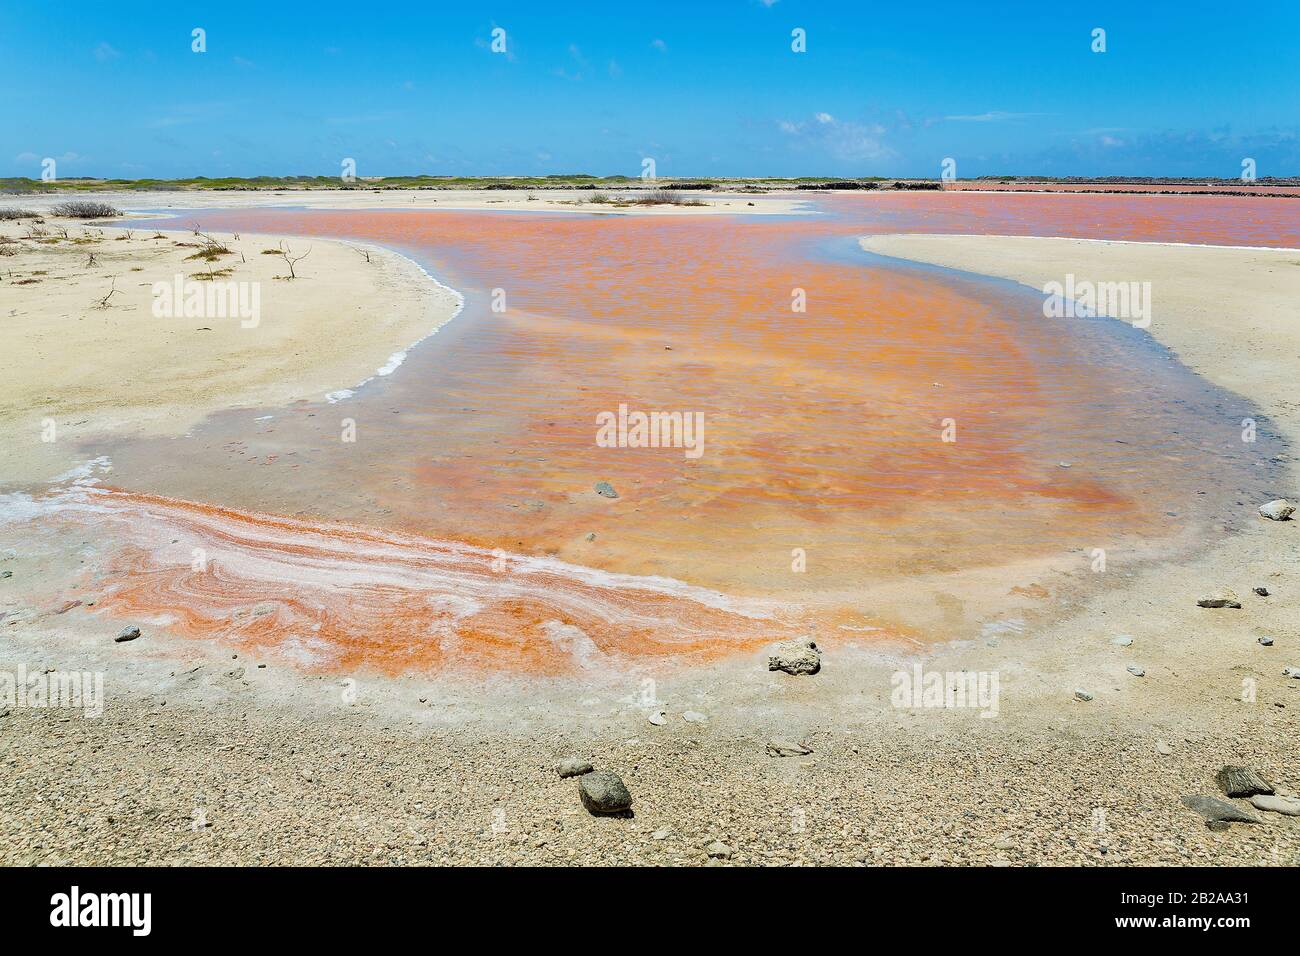 Landscape with orange salt lake and land on Netherlands Antilles Stock Photo